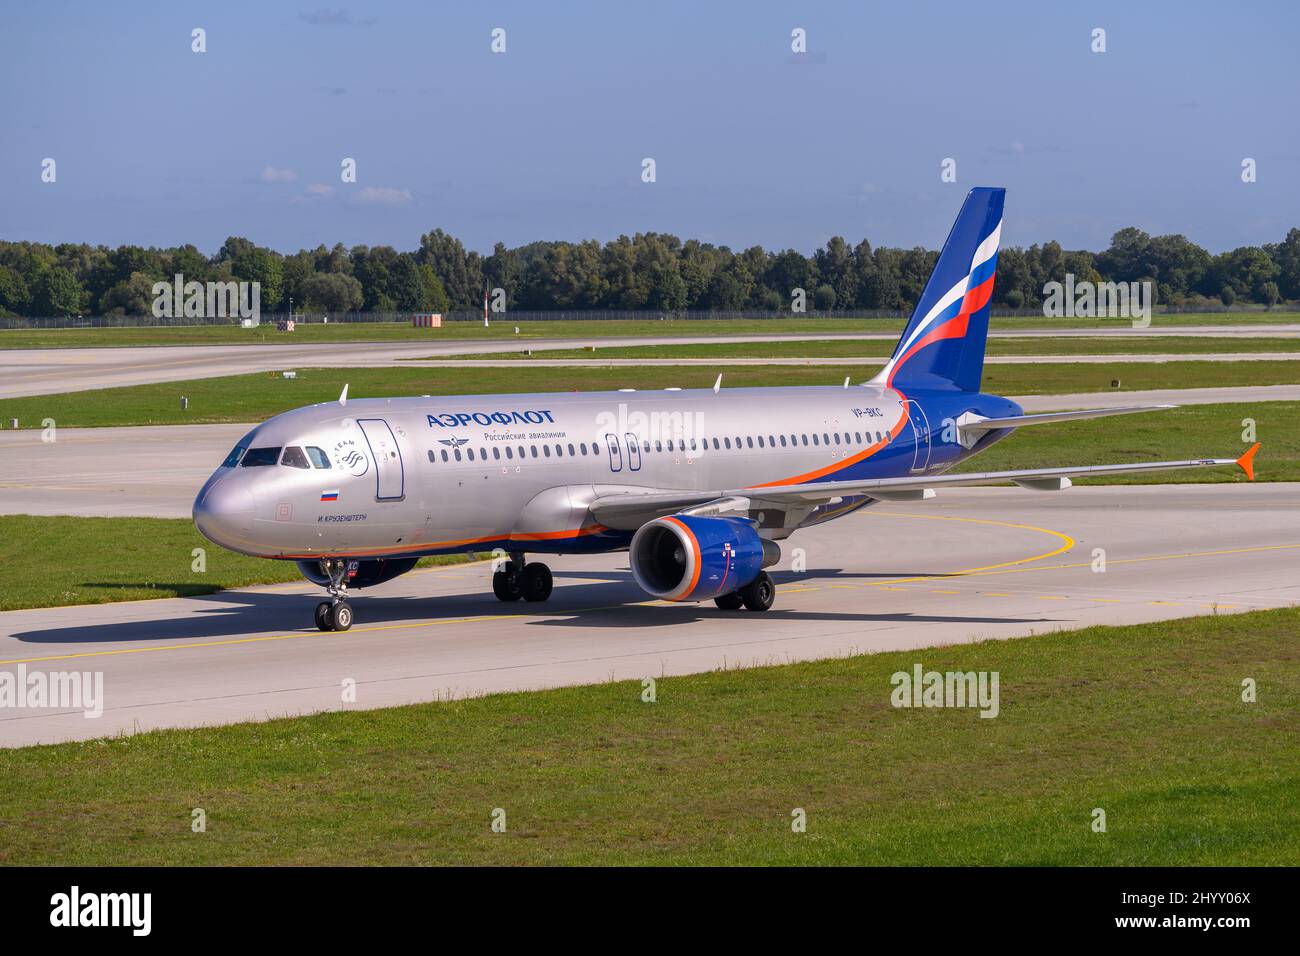 Aeroflot - Russian Airlines Airbus A320-214 avec l'immatriculation de l'avion VP-BKC est en train de rouler sur la piste nord 08L de l'aéroport de Munich Banque D'Images